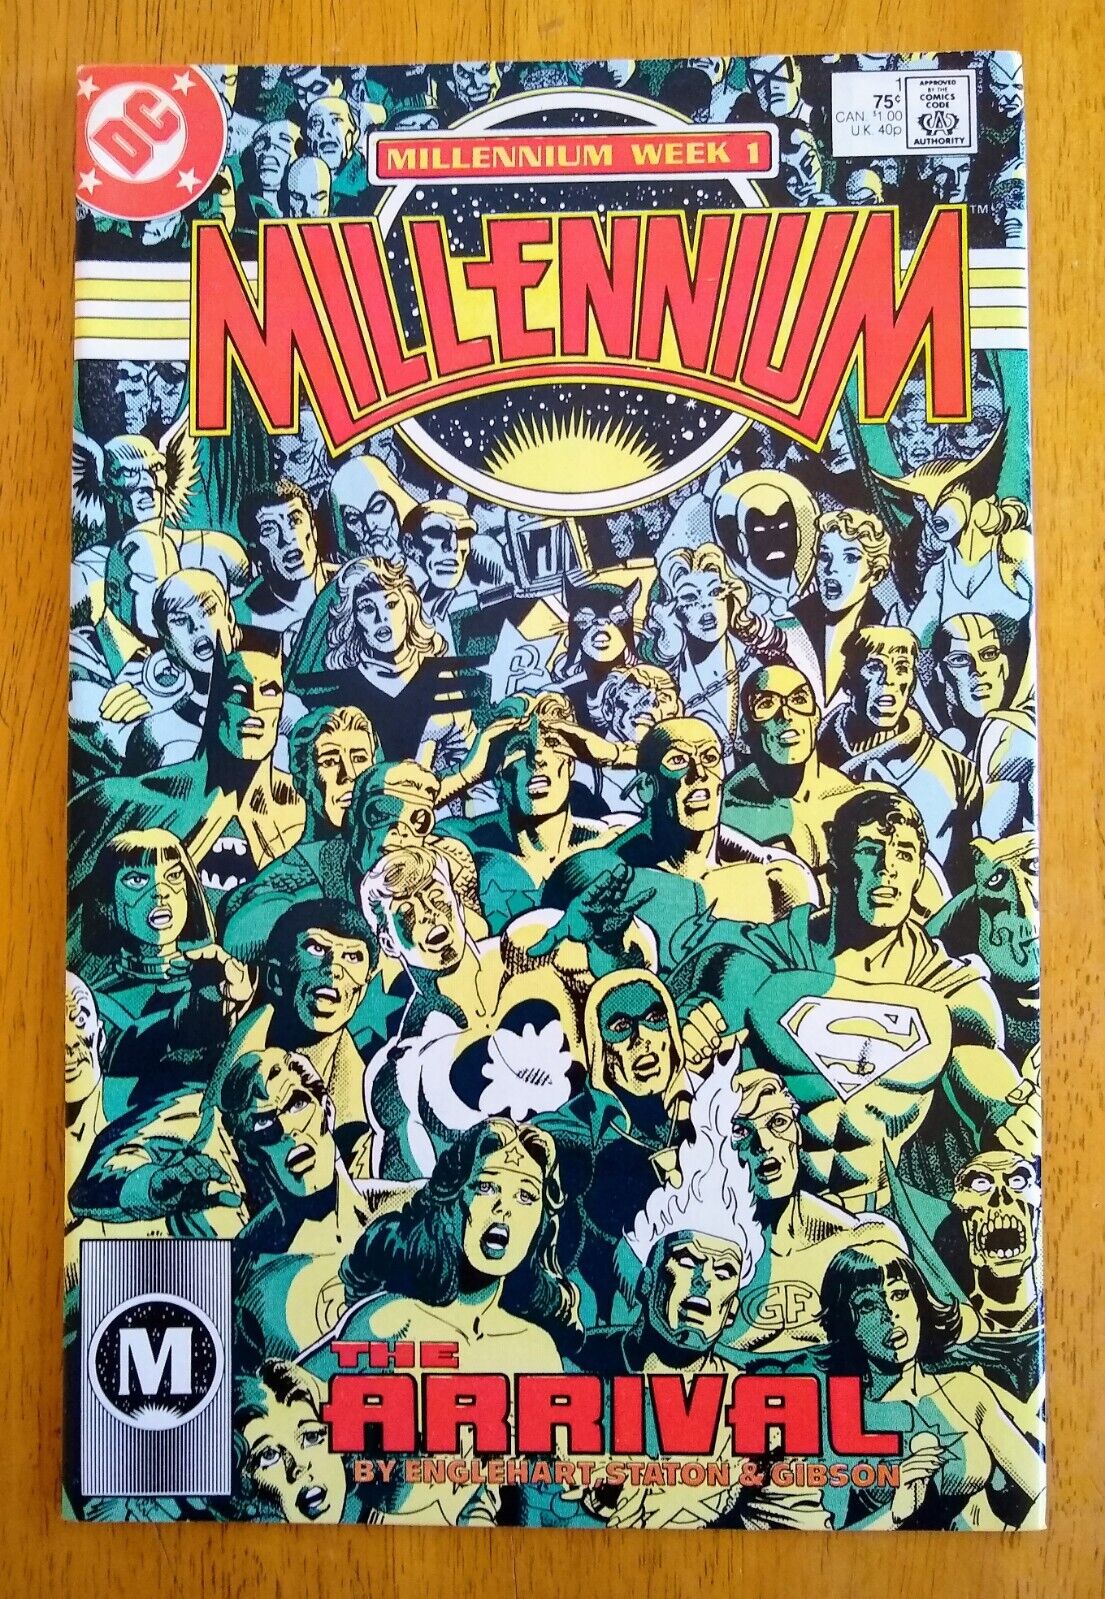 Millennium #1 The Arrival Millennium Week 1 DC 1987 Comic Book Englehart Gibson